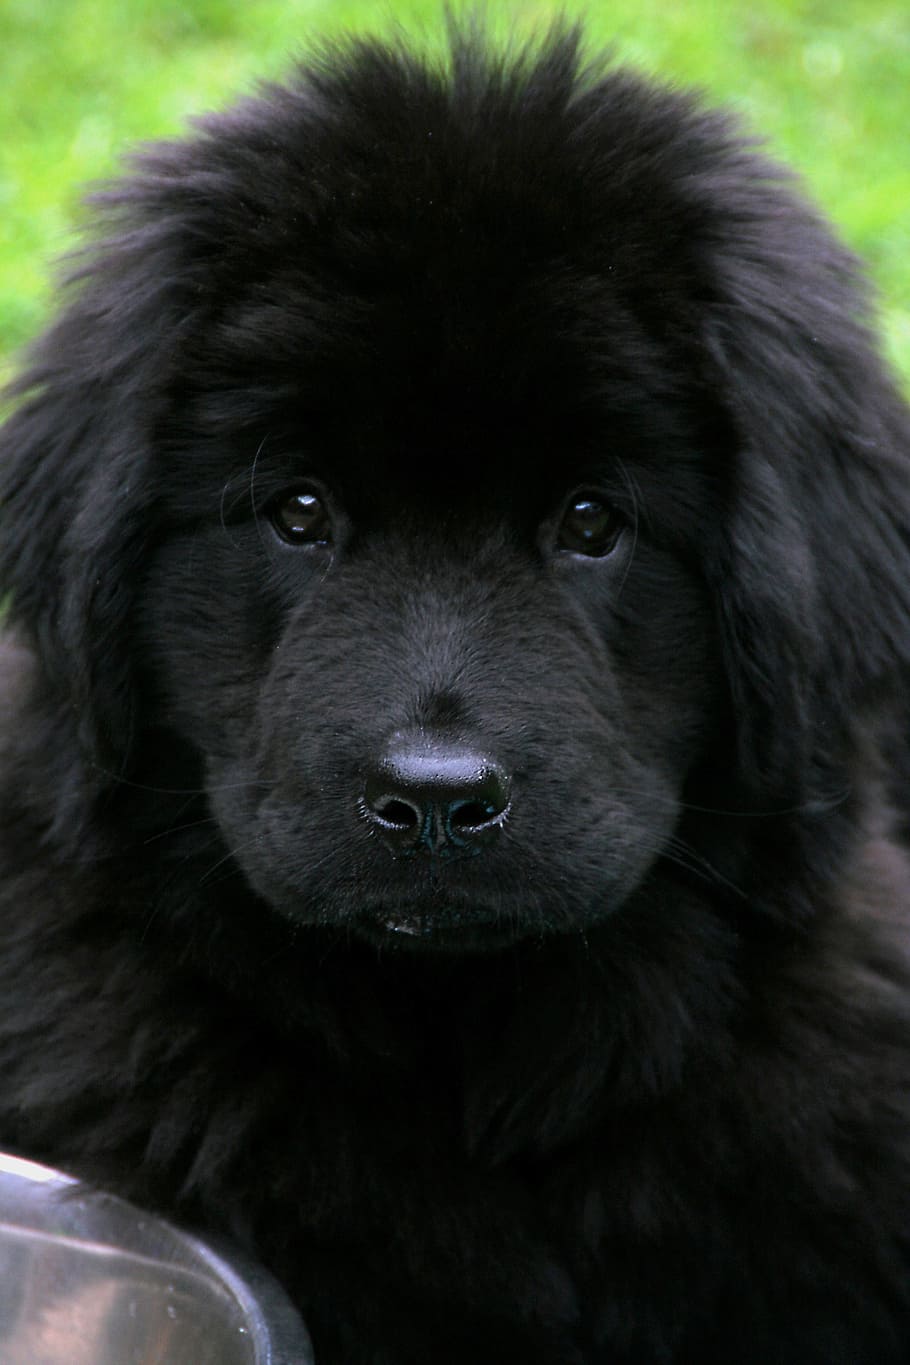 newfoundland puppy close-up photo, daytime, dog, newfoundland, pet, black, cute, giant, one animal, mammal